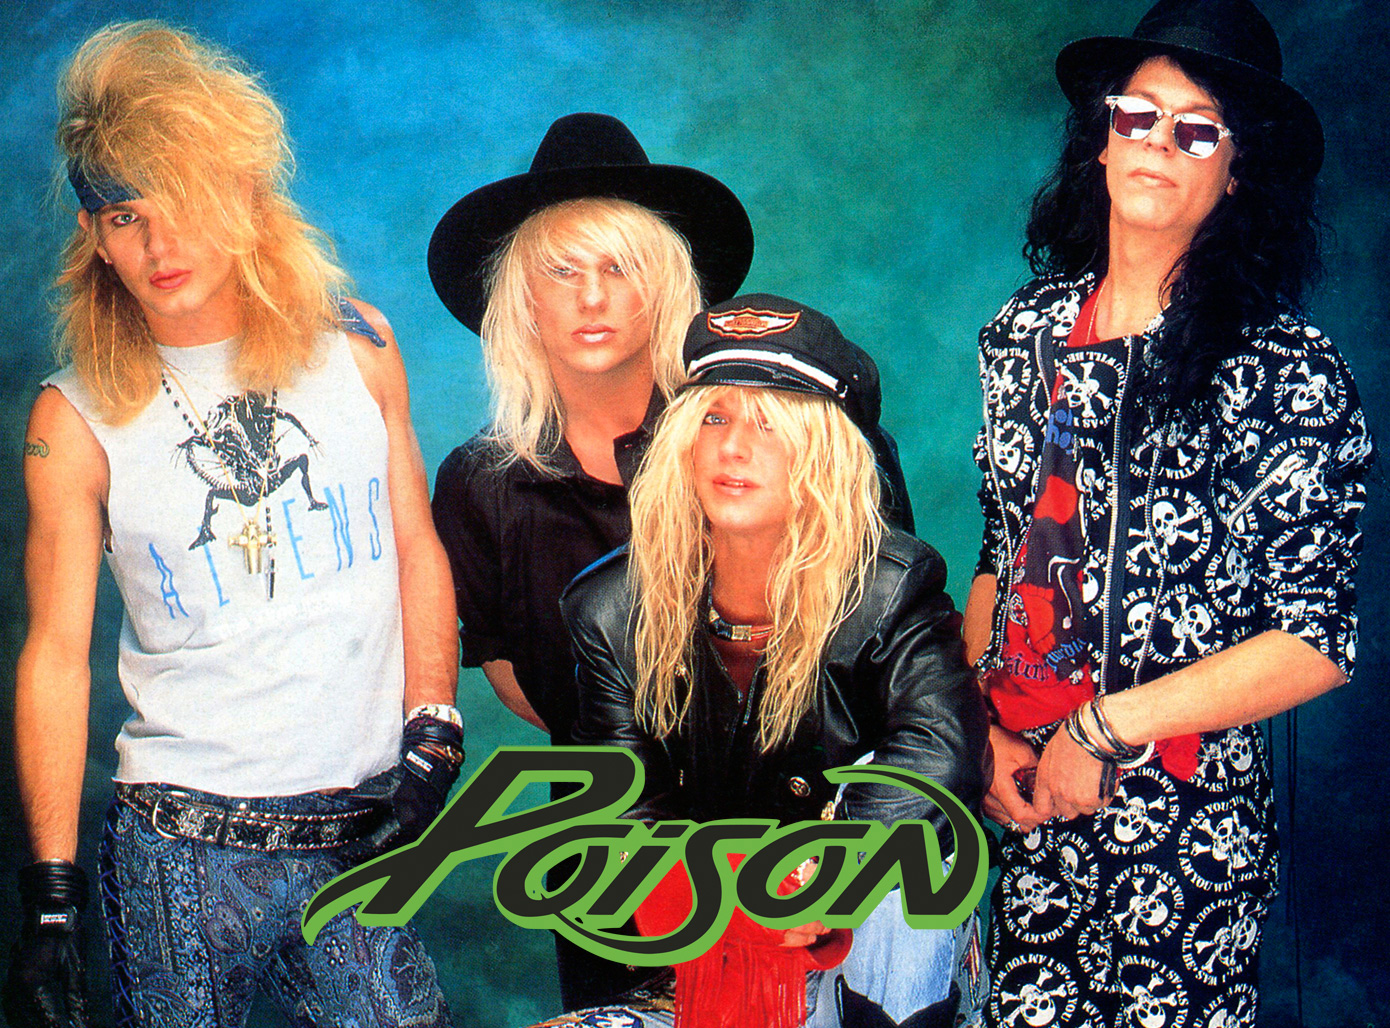 ¿Bon Jovi o Poison? Poison-cover-photo